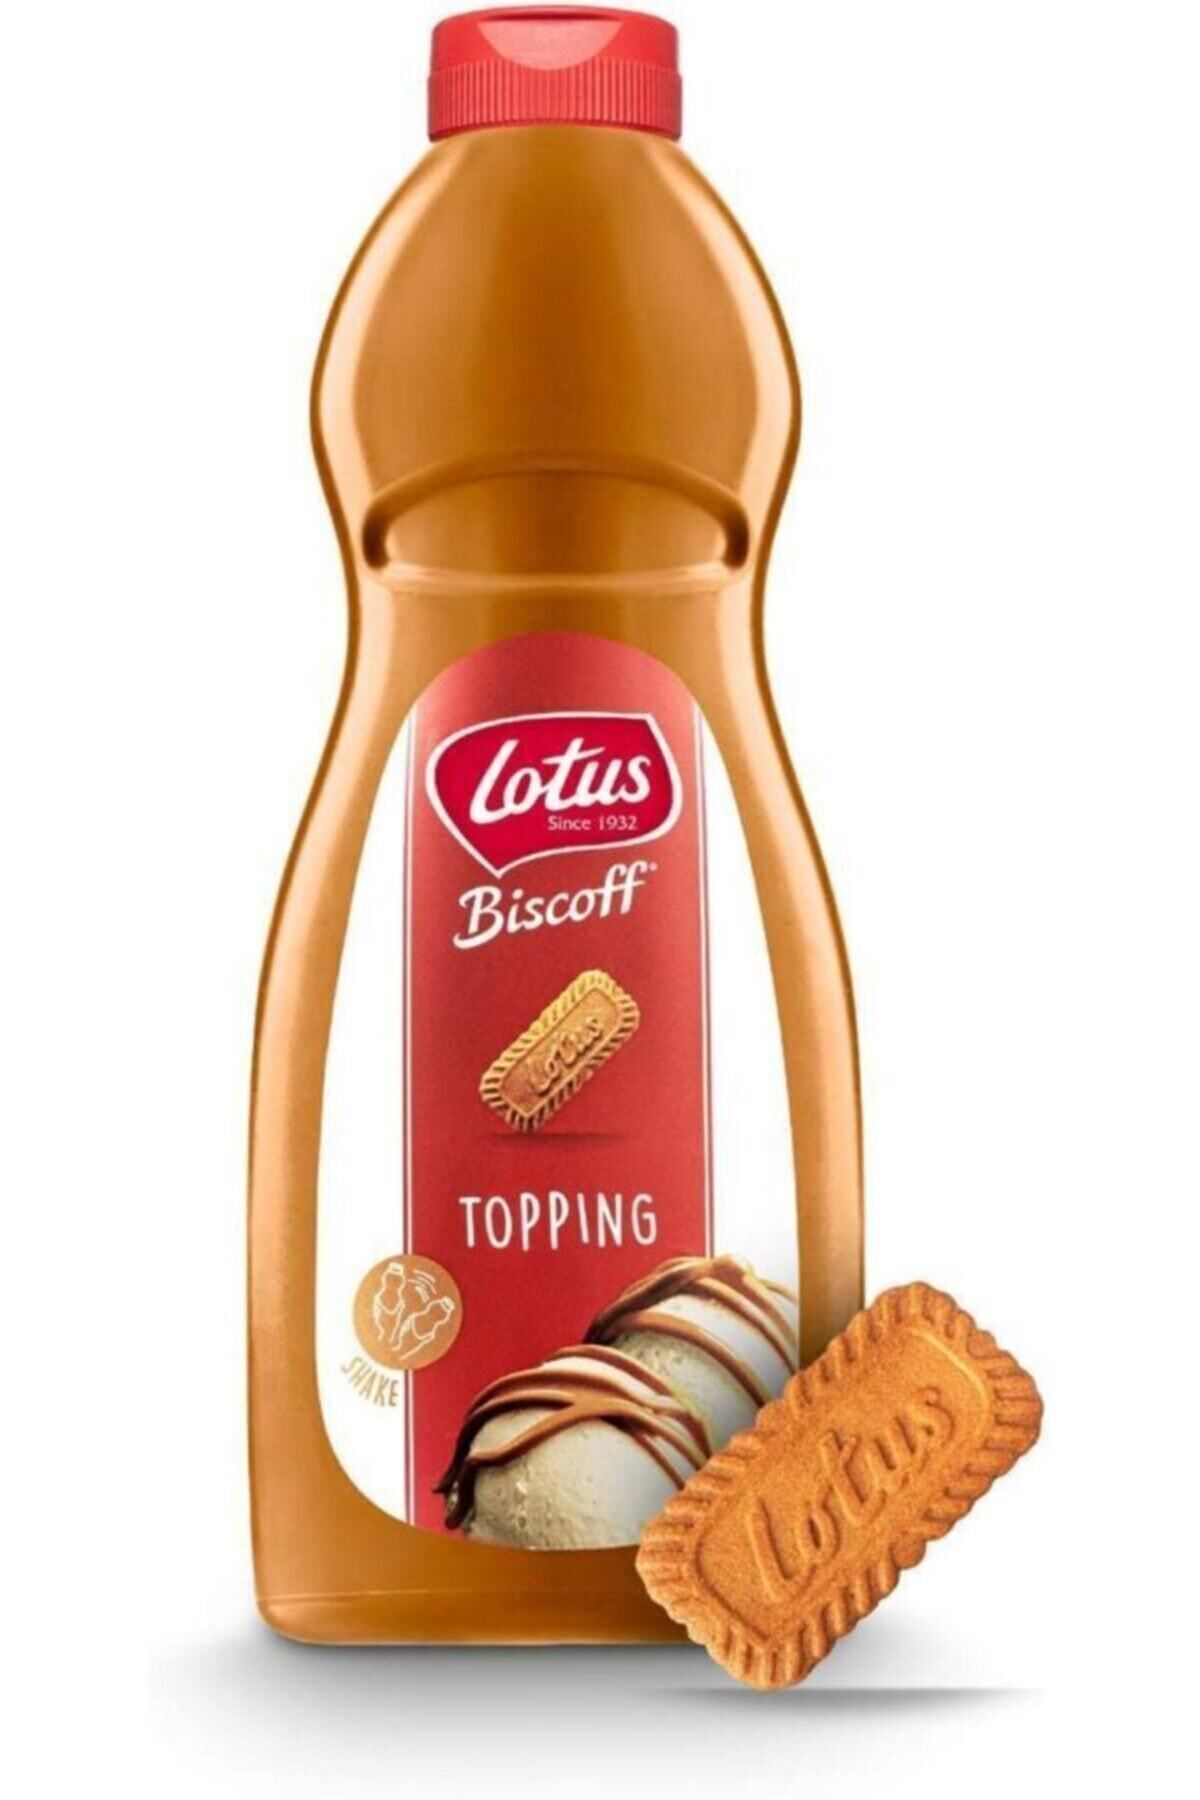 Lotus Biscoff 1 Kg Topping Sauce Original